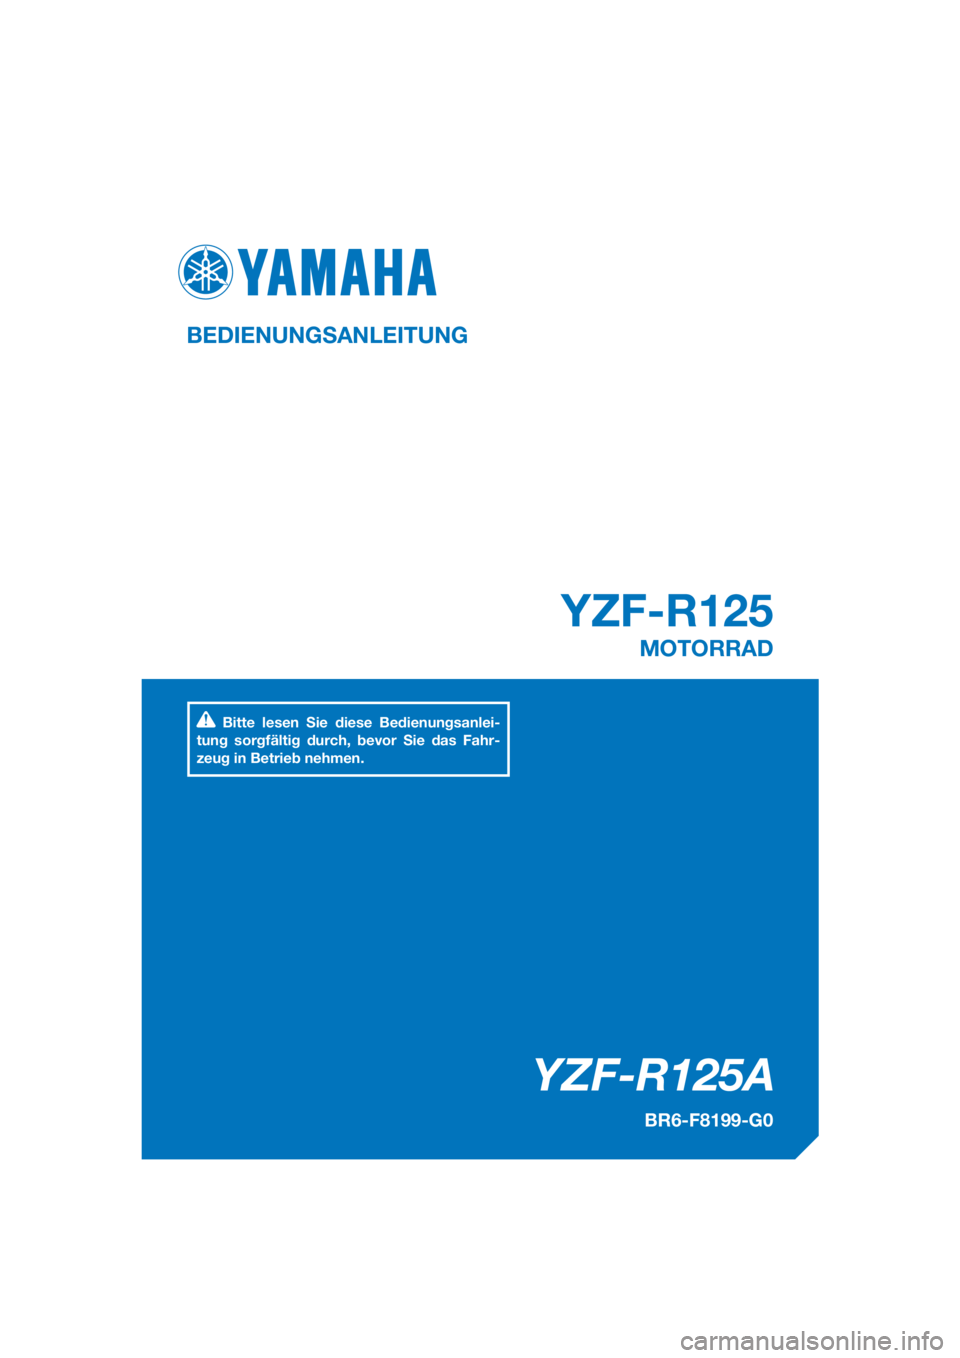 YAMAHA YZF-R125 2017  Betriebsanleitungen (in German) PANTONE285C
YZF-R125A
YZF-R125
BEDIENUNGSANLEITUNG
BR6-F8199-G0
MOTORRAD
Bitte lesen Sie diese Bedienungsanlei-
tung sorgfältig durch, bevor Sie das Fahr-
zeug in Betrieb nehmen.
[German  (G)] 